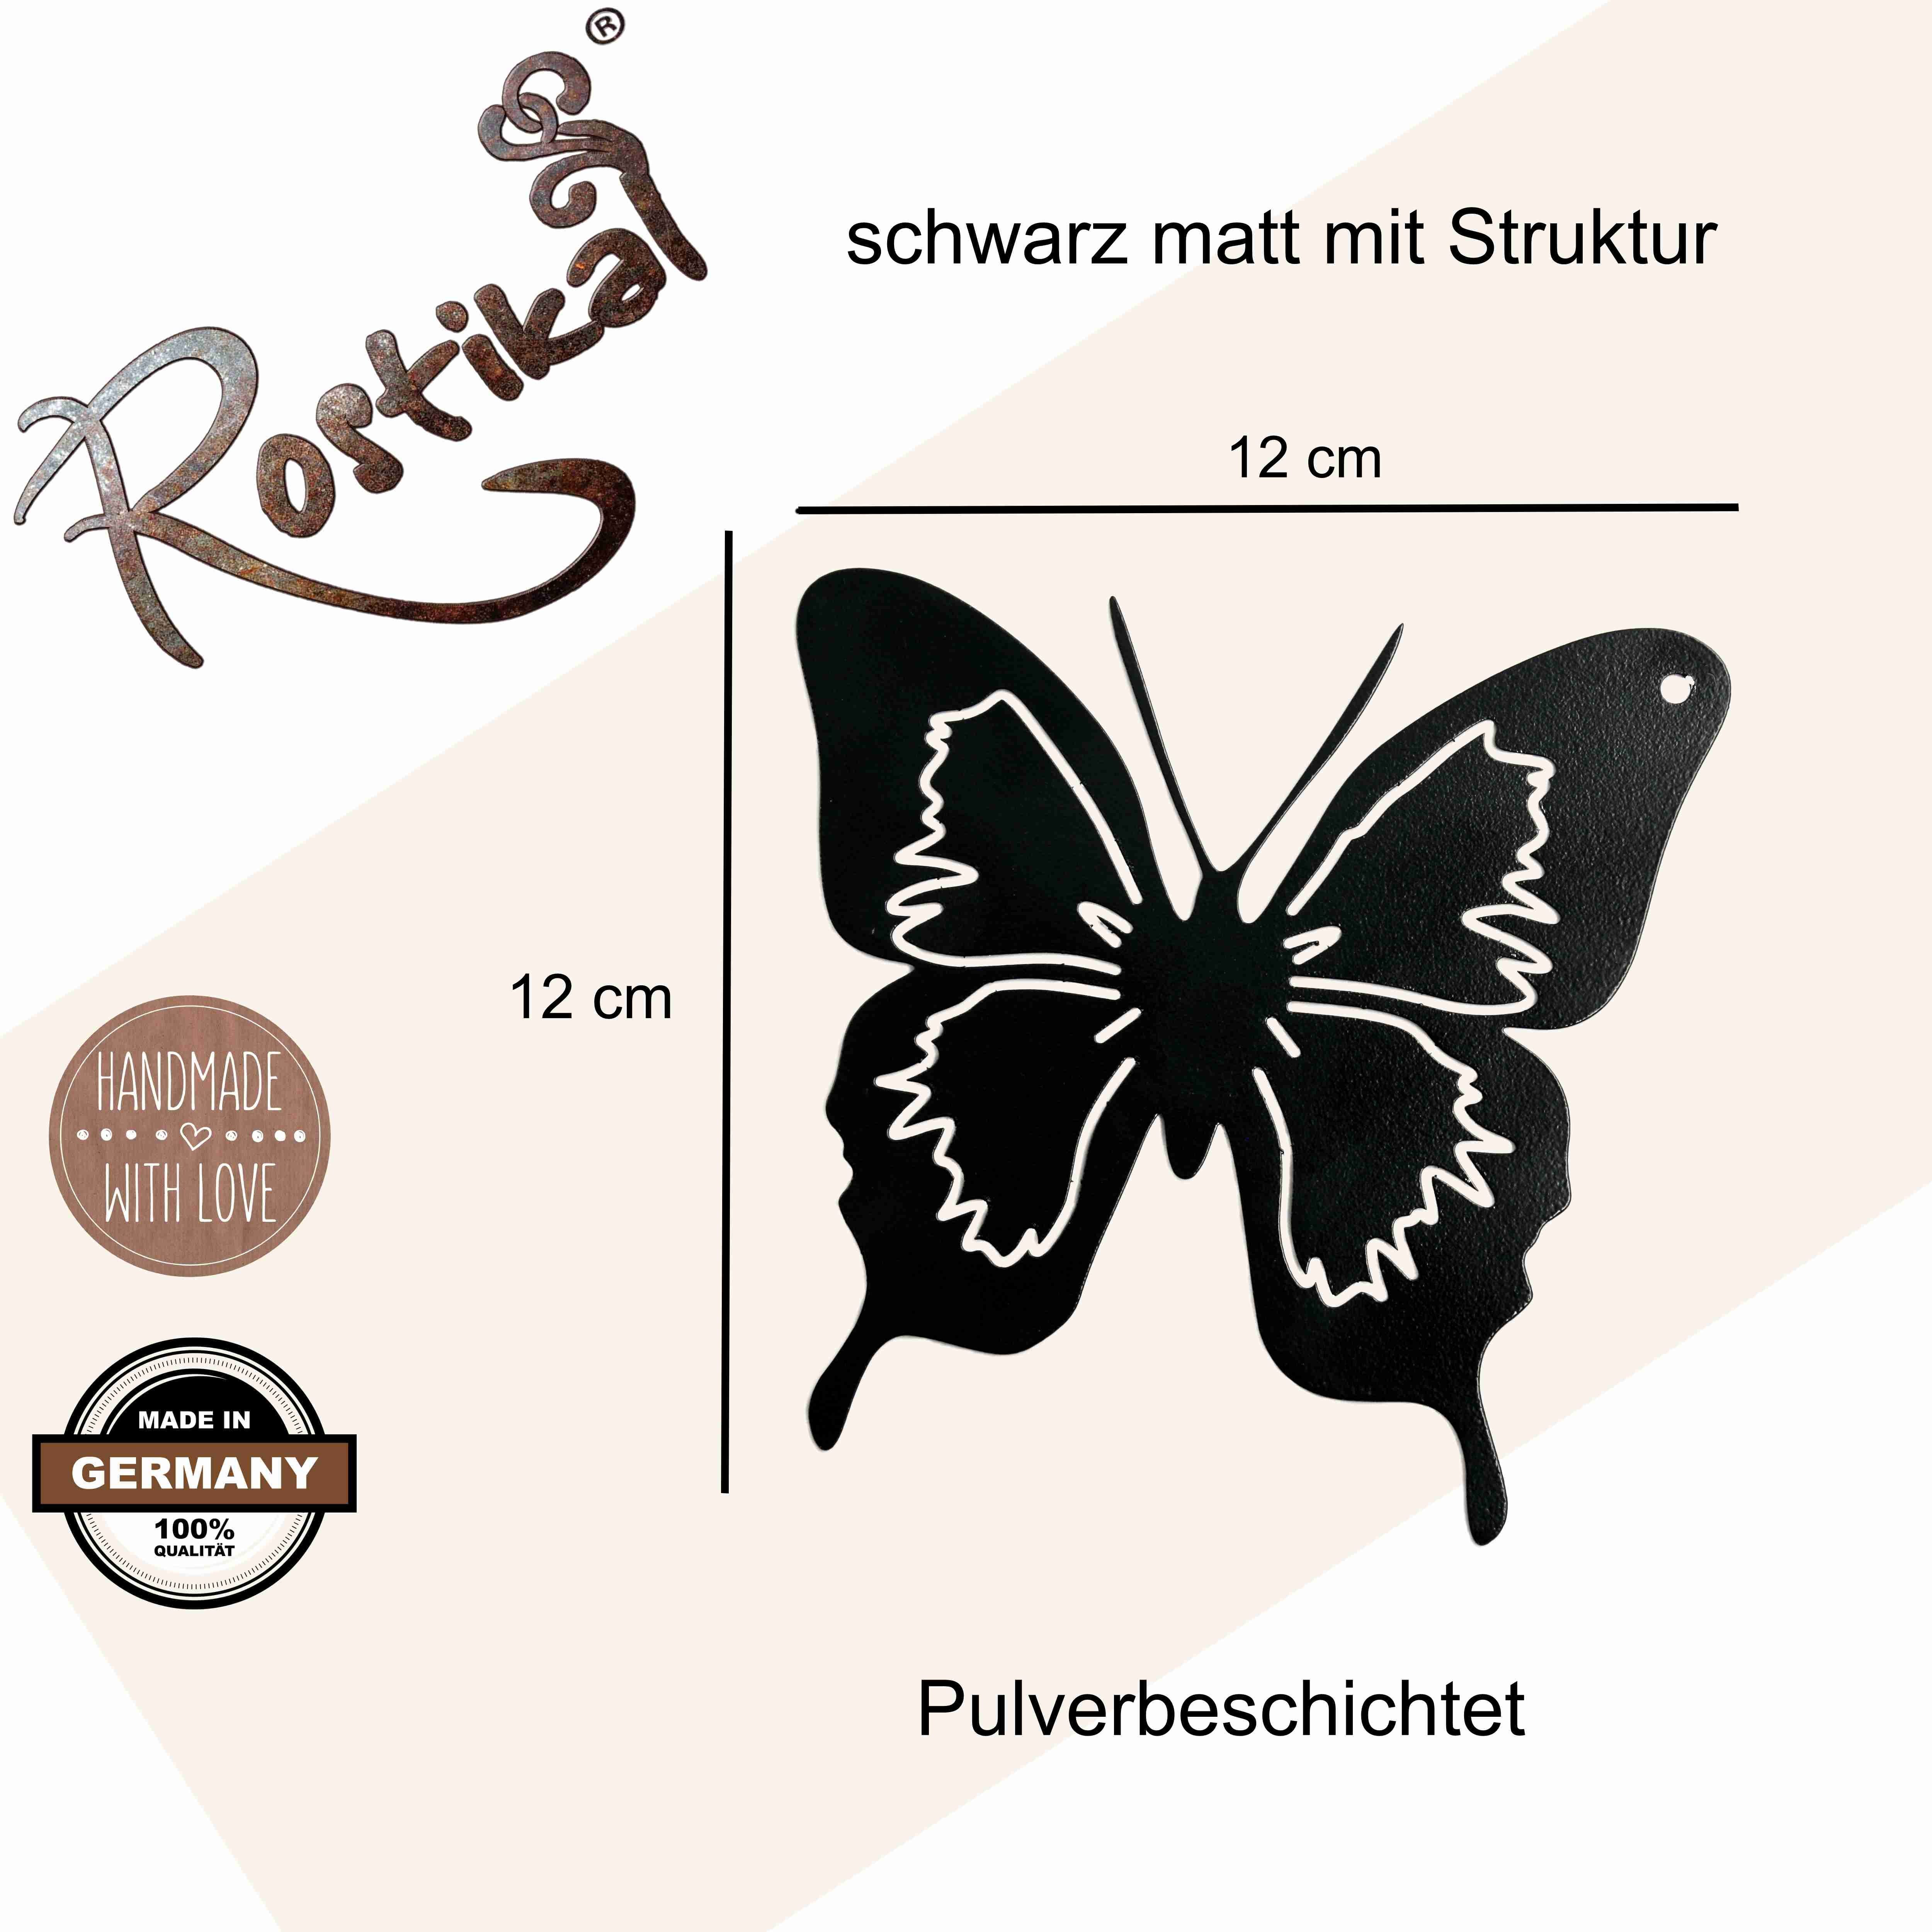 Hängedekoration schwarz Schmetterling, Metall handmade Rostikal